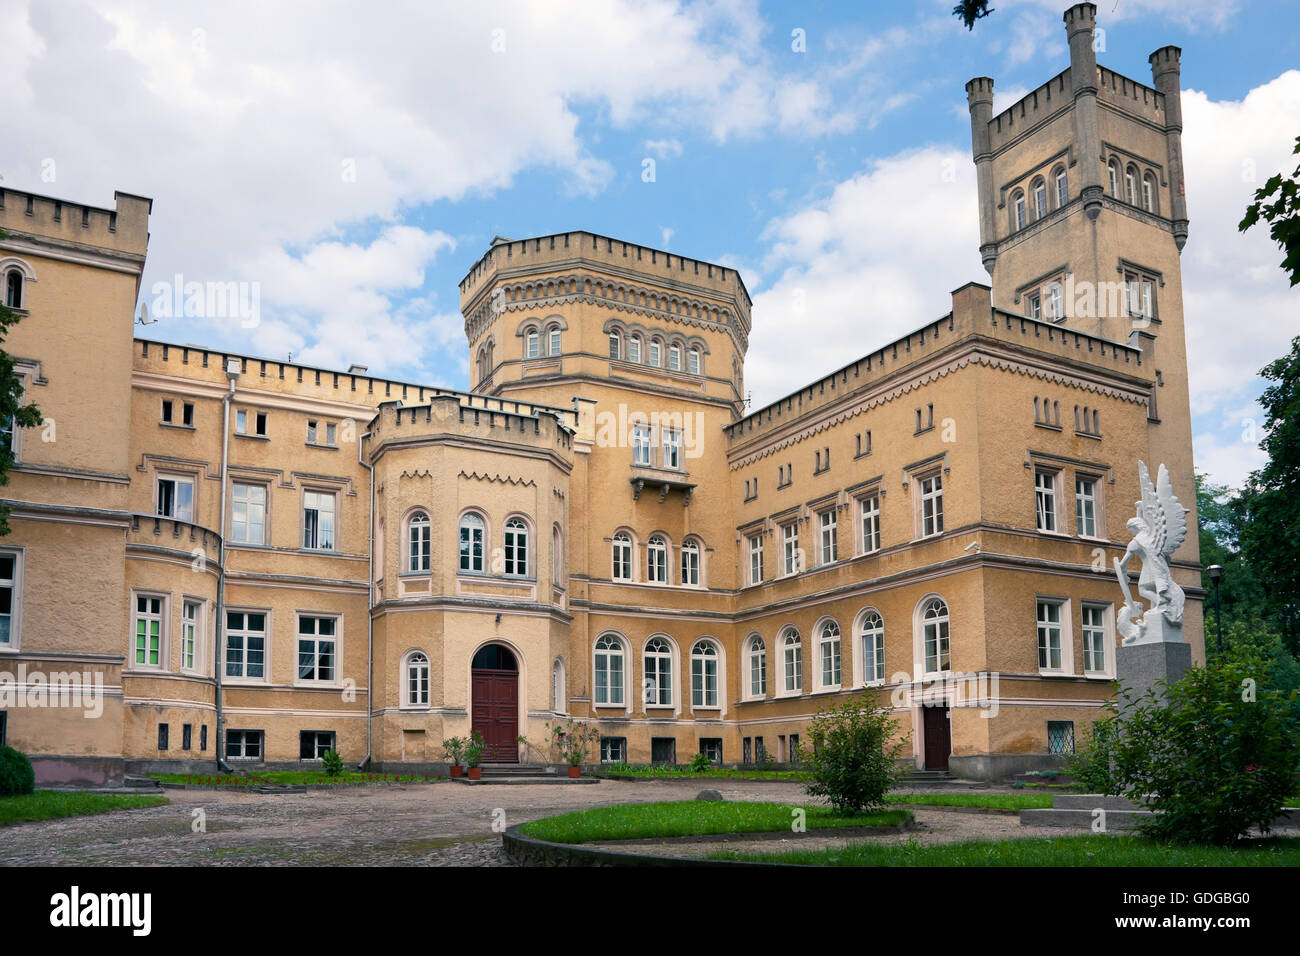 Palace in Jablonowo Pomorskie Stock Photo